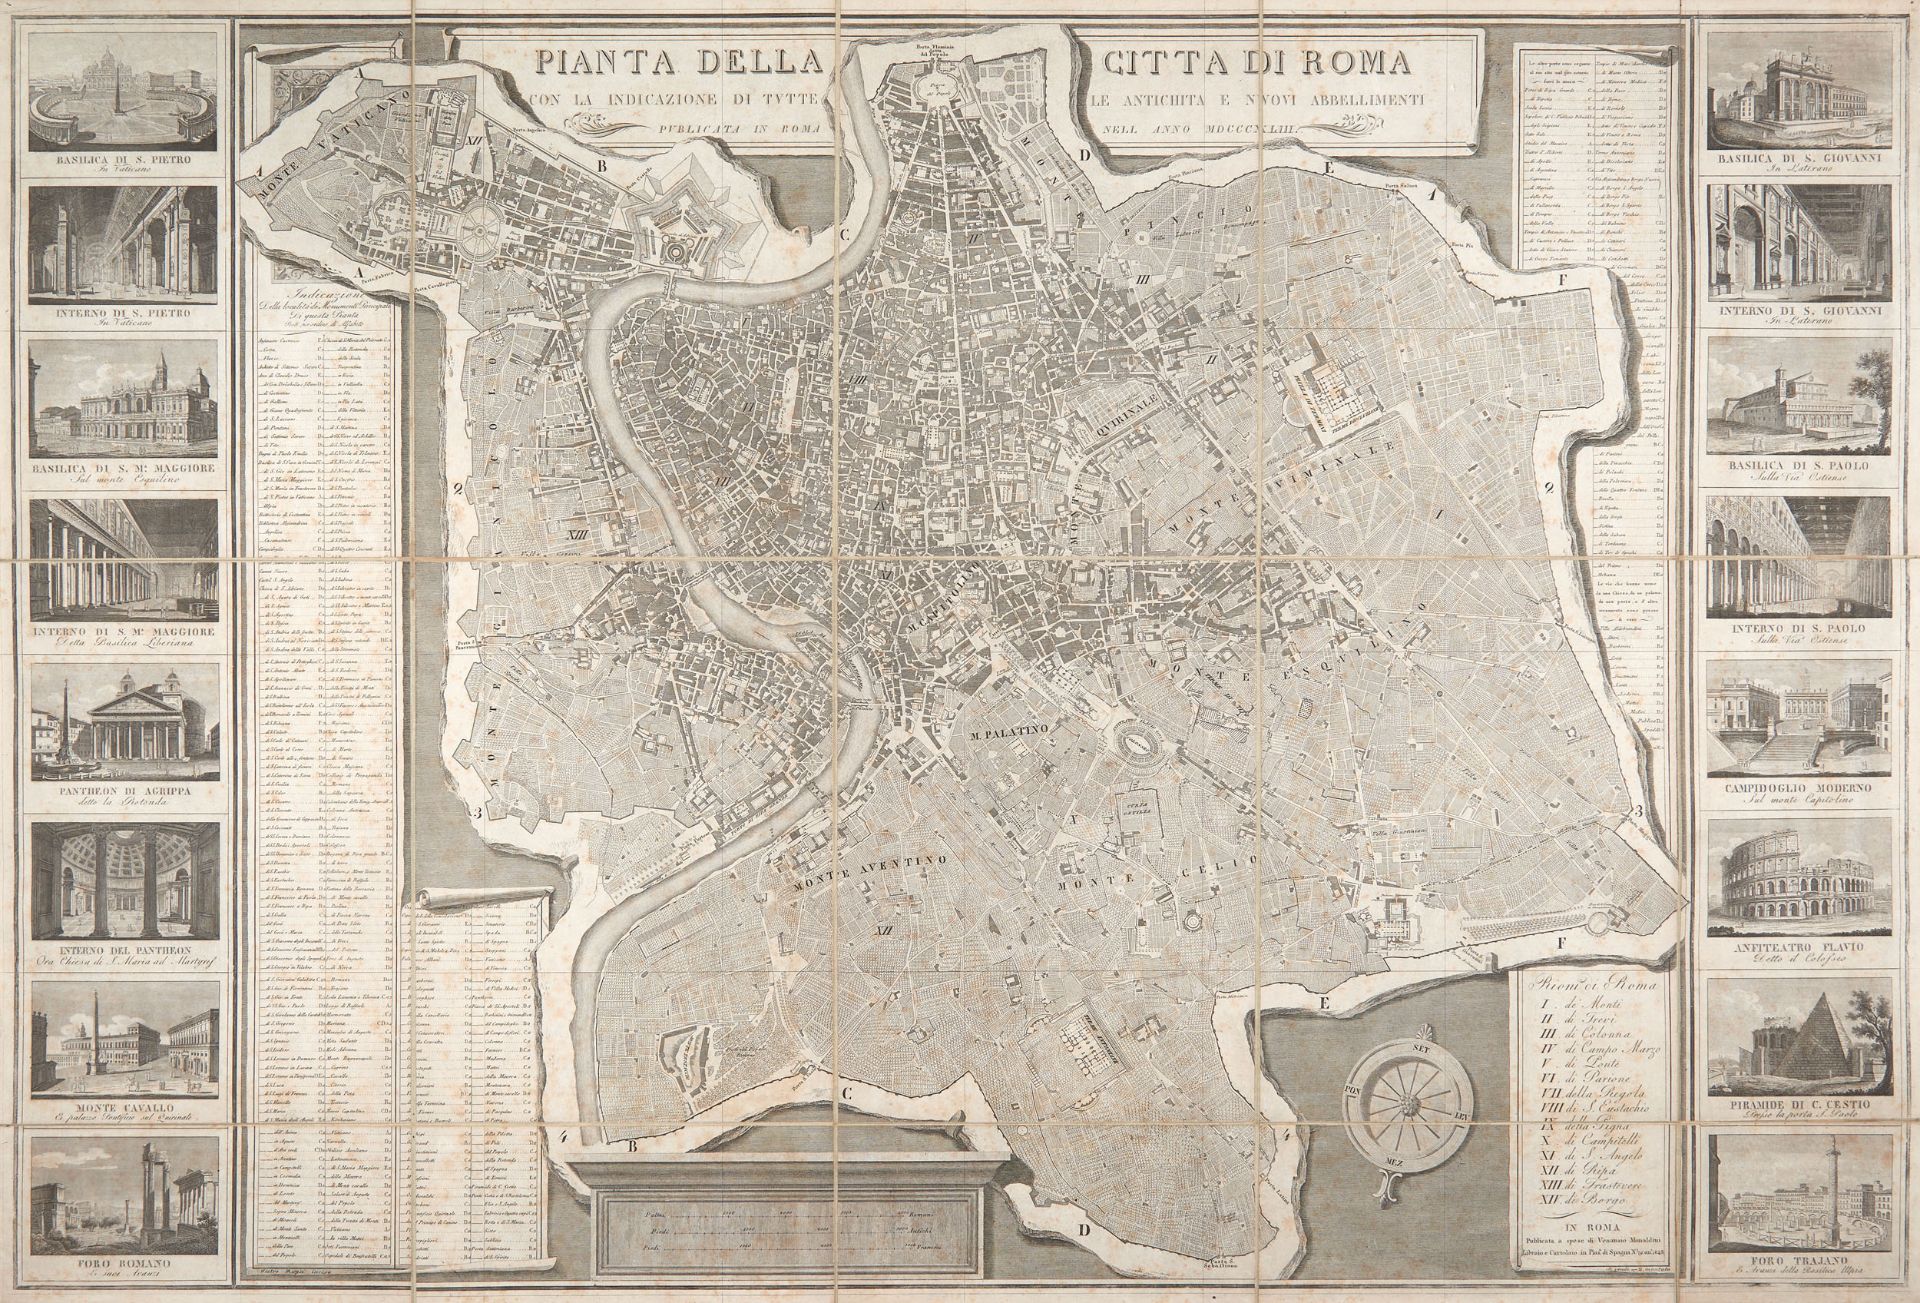 RUGA, Pietro (19th century). Pianta della città di Roma con la indicazione di tutte le antichità